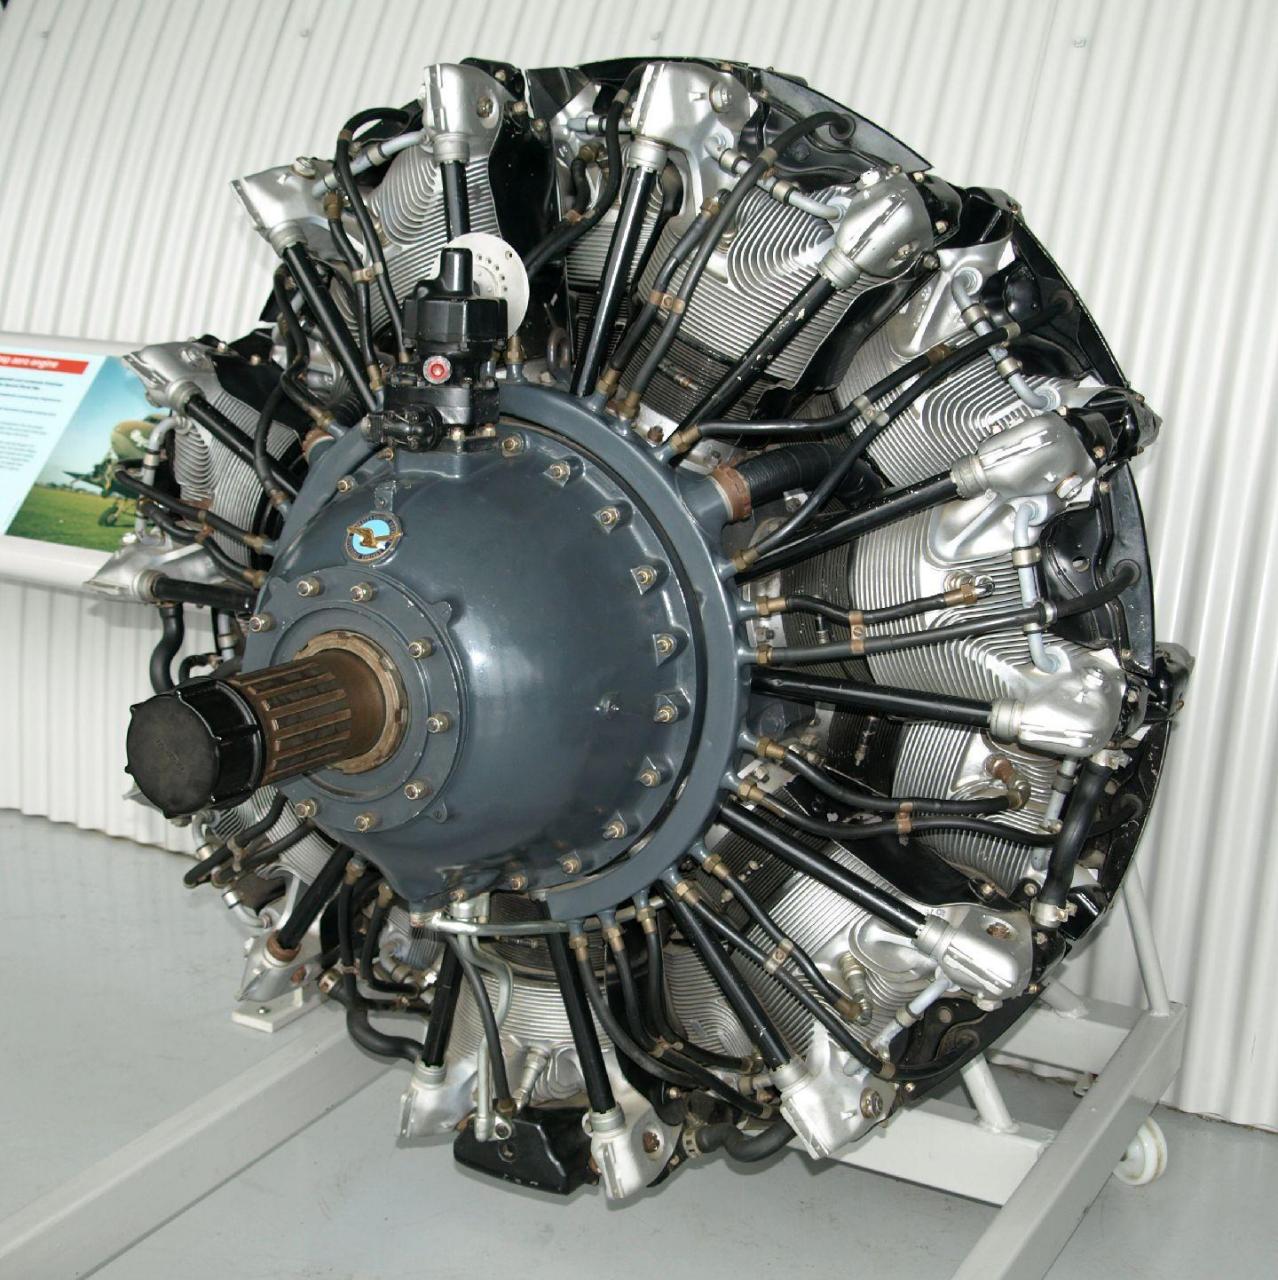 星形发动机是一种往复式 内燃机 配置,其中气缸像车轮的辐条一样从